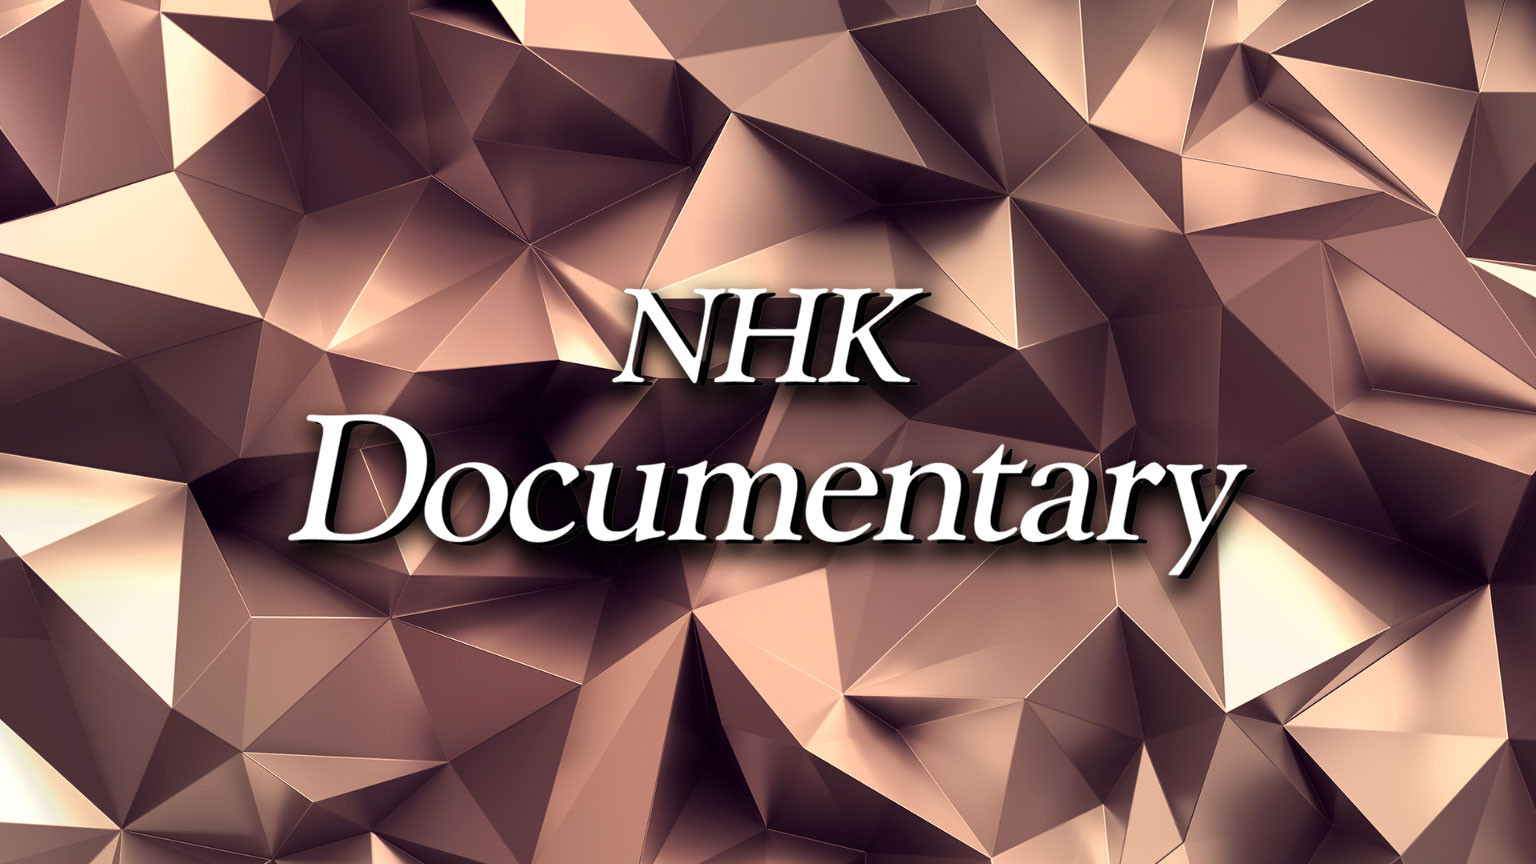 এনএইচকে ডকুমেন্টারি
NHK Documentary